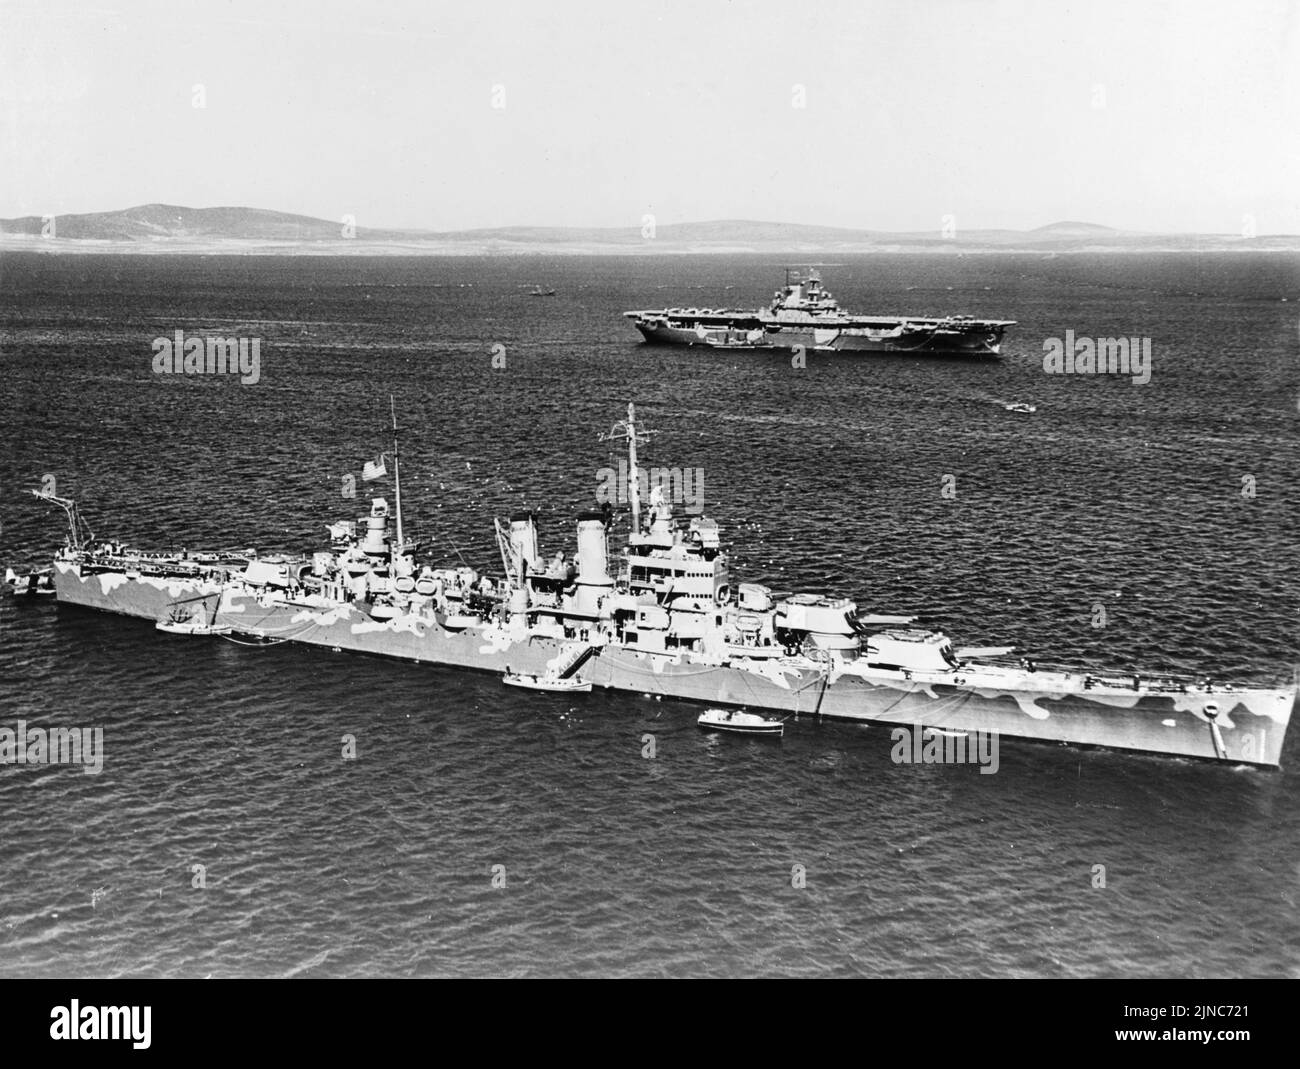 Le porte-avions américain USS Wasp et le croiseur lourd USS Wichita à Scaca Flow. L'USS Wasp a été coulé quelques mois plus tard après avoir été torpillé pendant l'invasion de Guadalcanal en septembre 1942. Banque D'Images